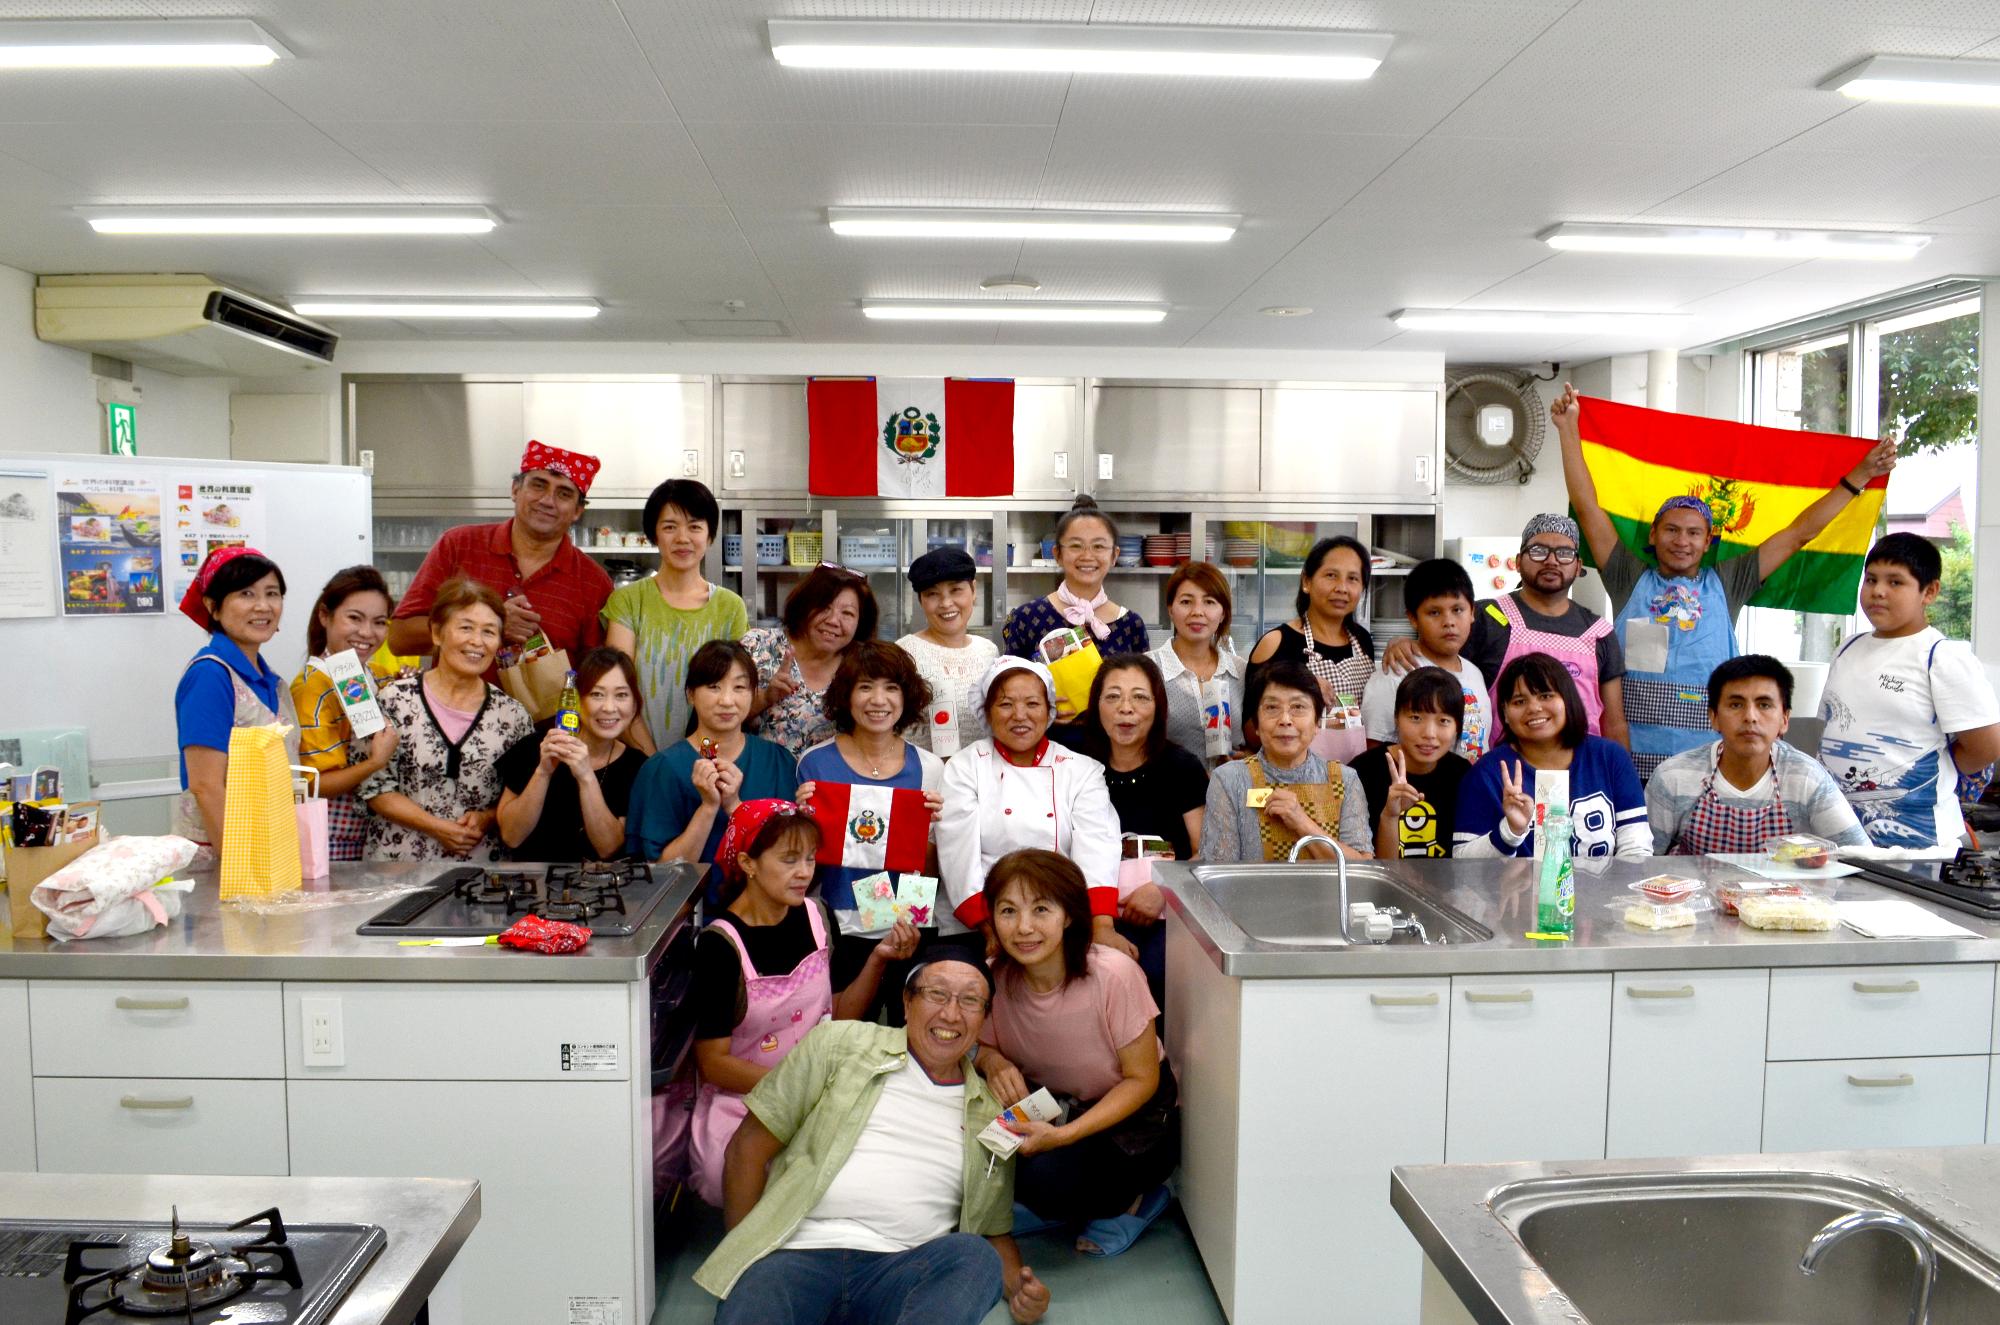 ペルーやボリビアの国旗がある調理室で参加者達が集まって記念撮影をしている写真